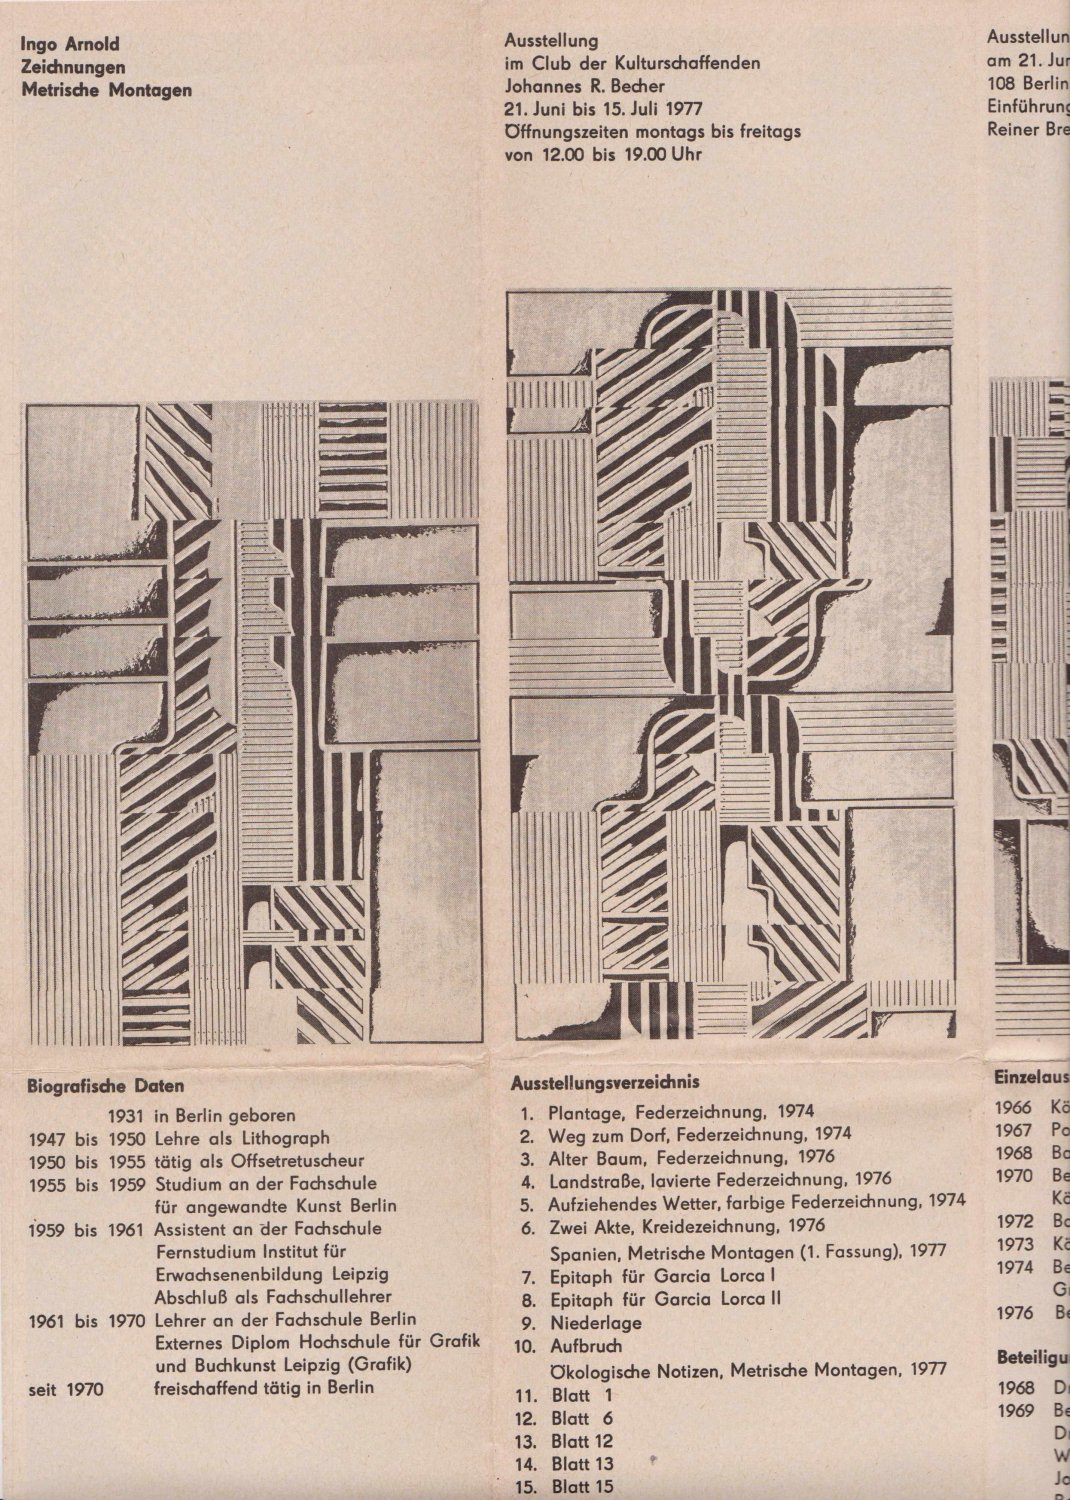 ARNOLD, Ingo:  Zeichnungen. Metrische Montagen. Ausstellung im Club der Kulturschaffenden Johannes R. Becher 21. Juni bis 15. Juli 1977. 